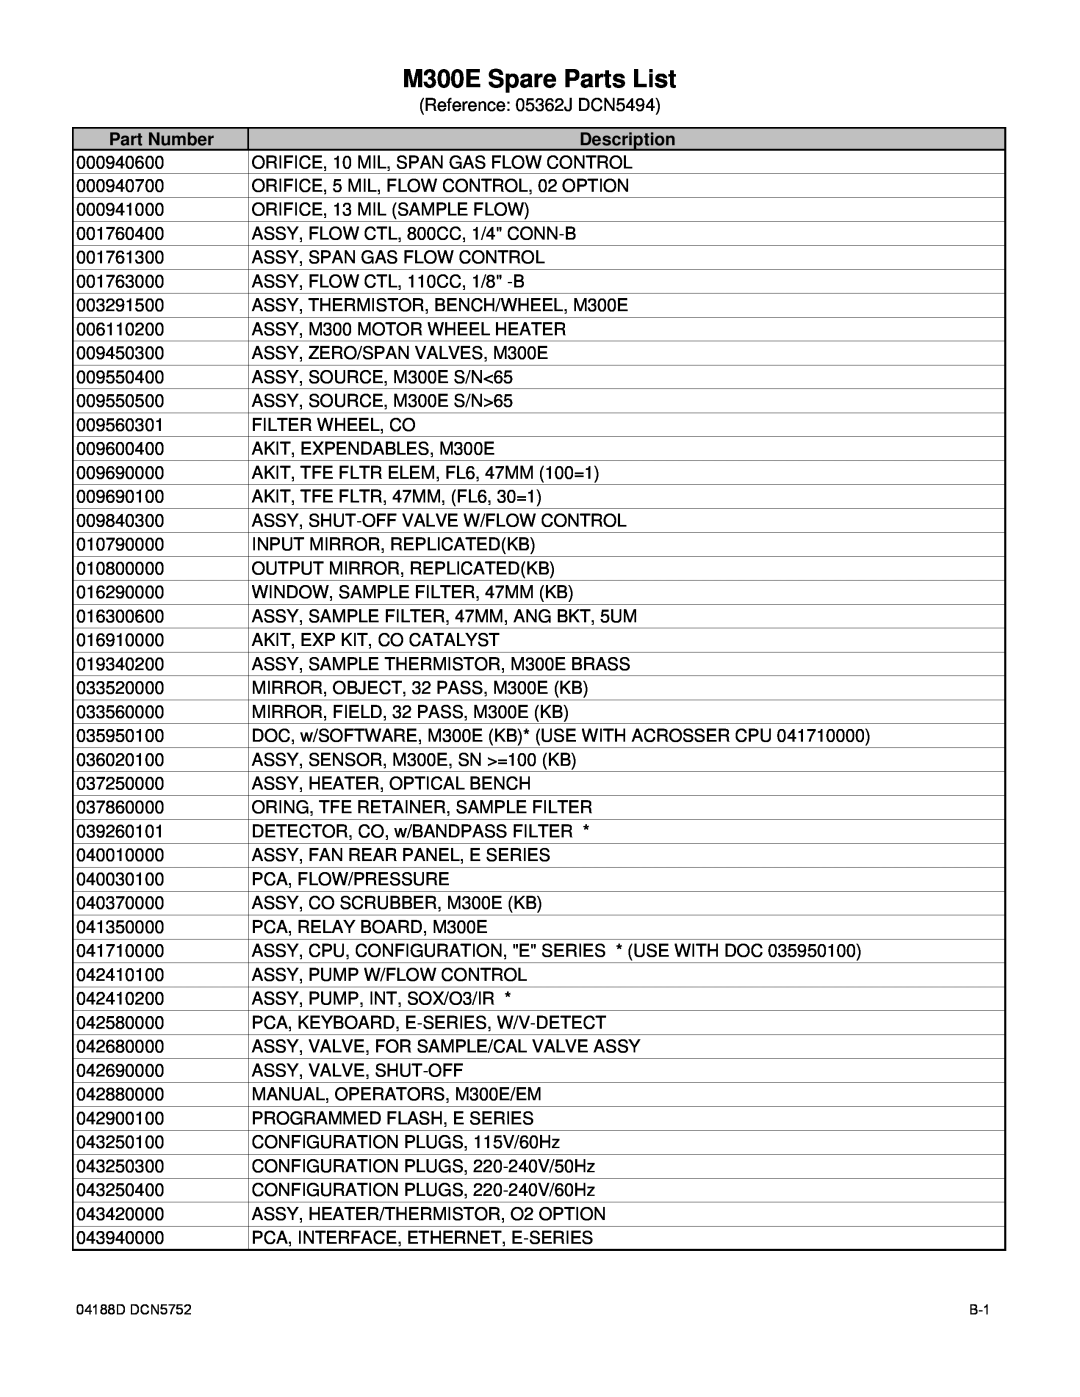 Teledyne M300EM operation manual M300E Spare Parts List, Part Number, Description 